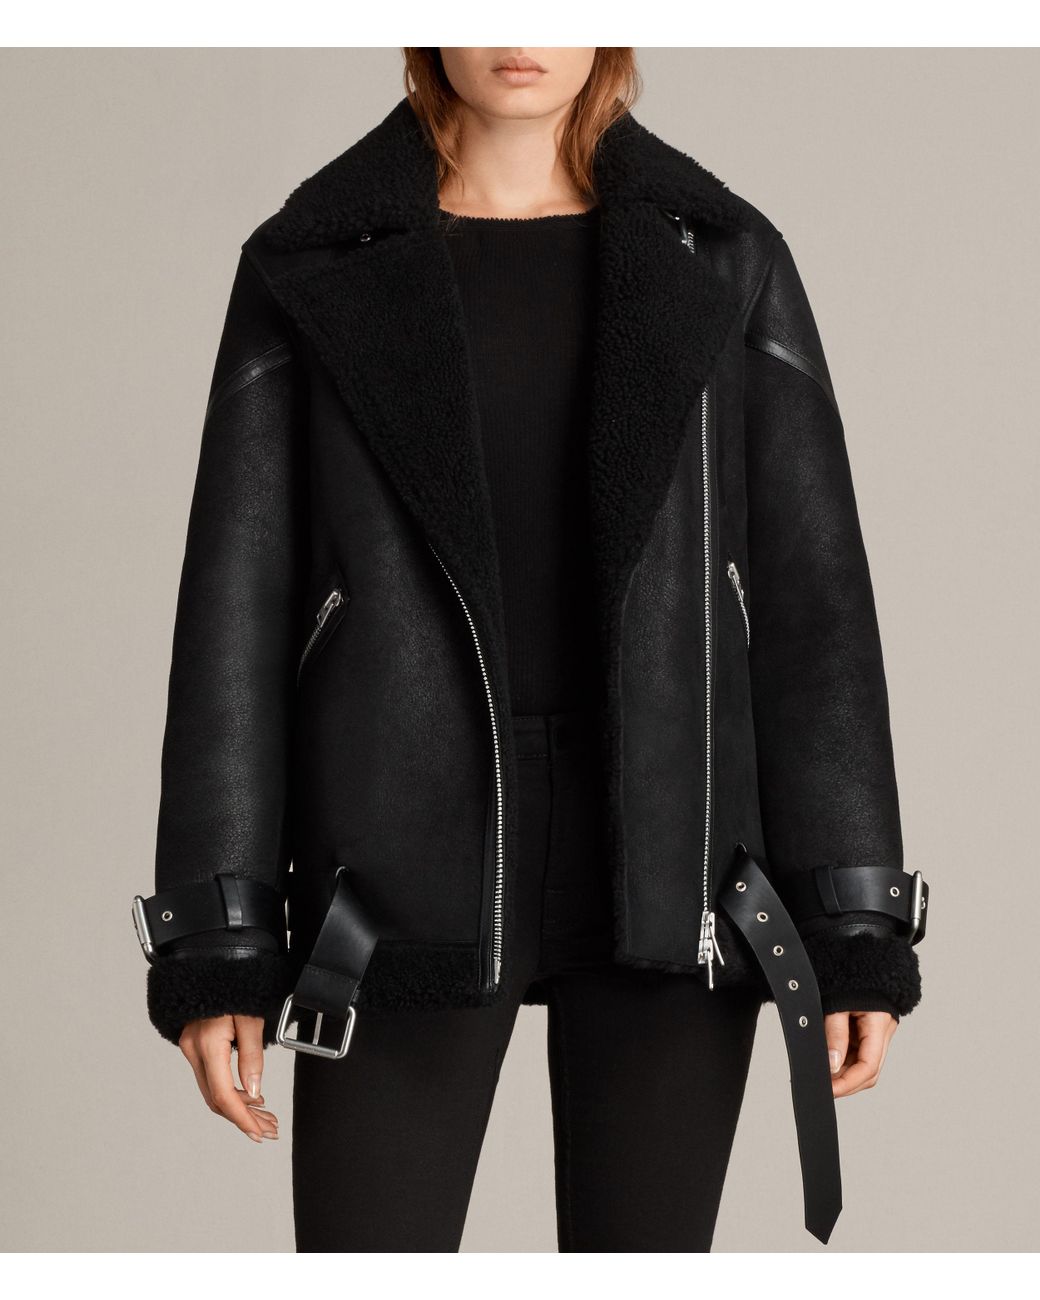 AllSaints Hawley Oversized Shearling Jacket in Black | Lyst